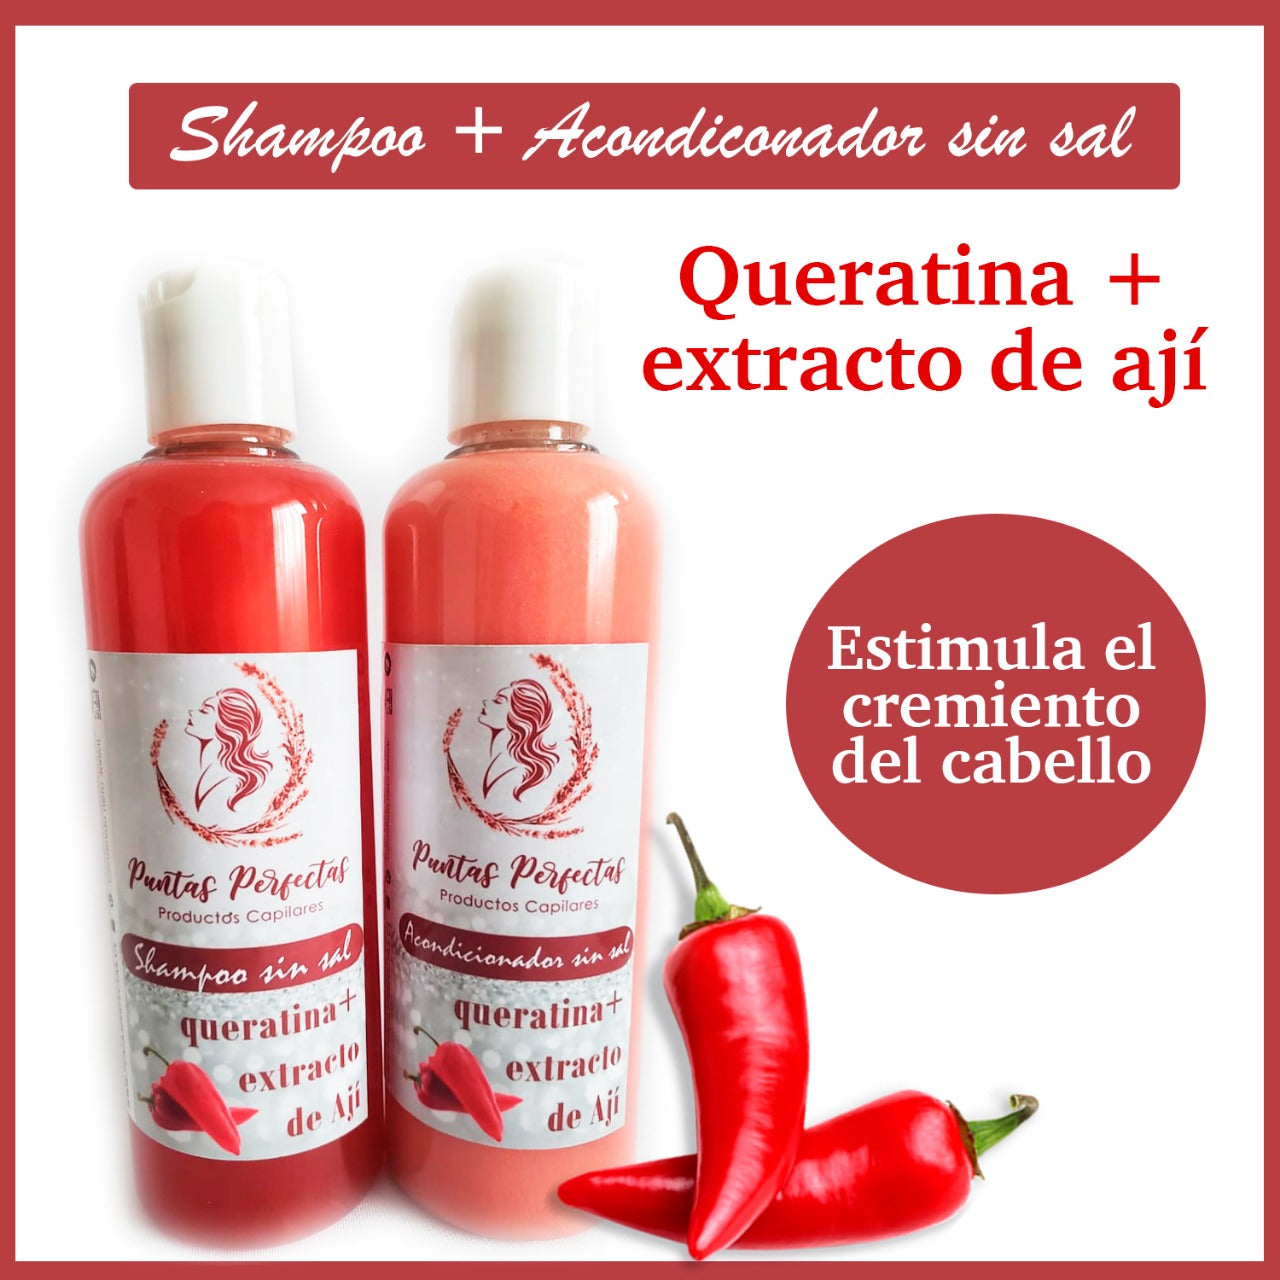 Shampoo + Acondicionador queratina y extracto de ají, Fortalecimiento capilar!